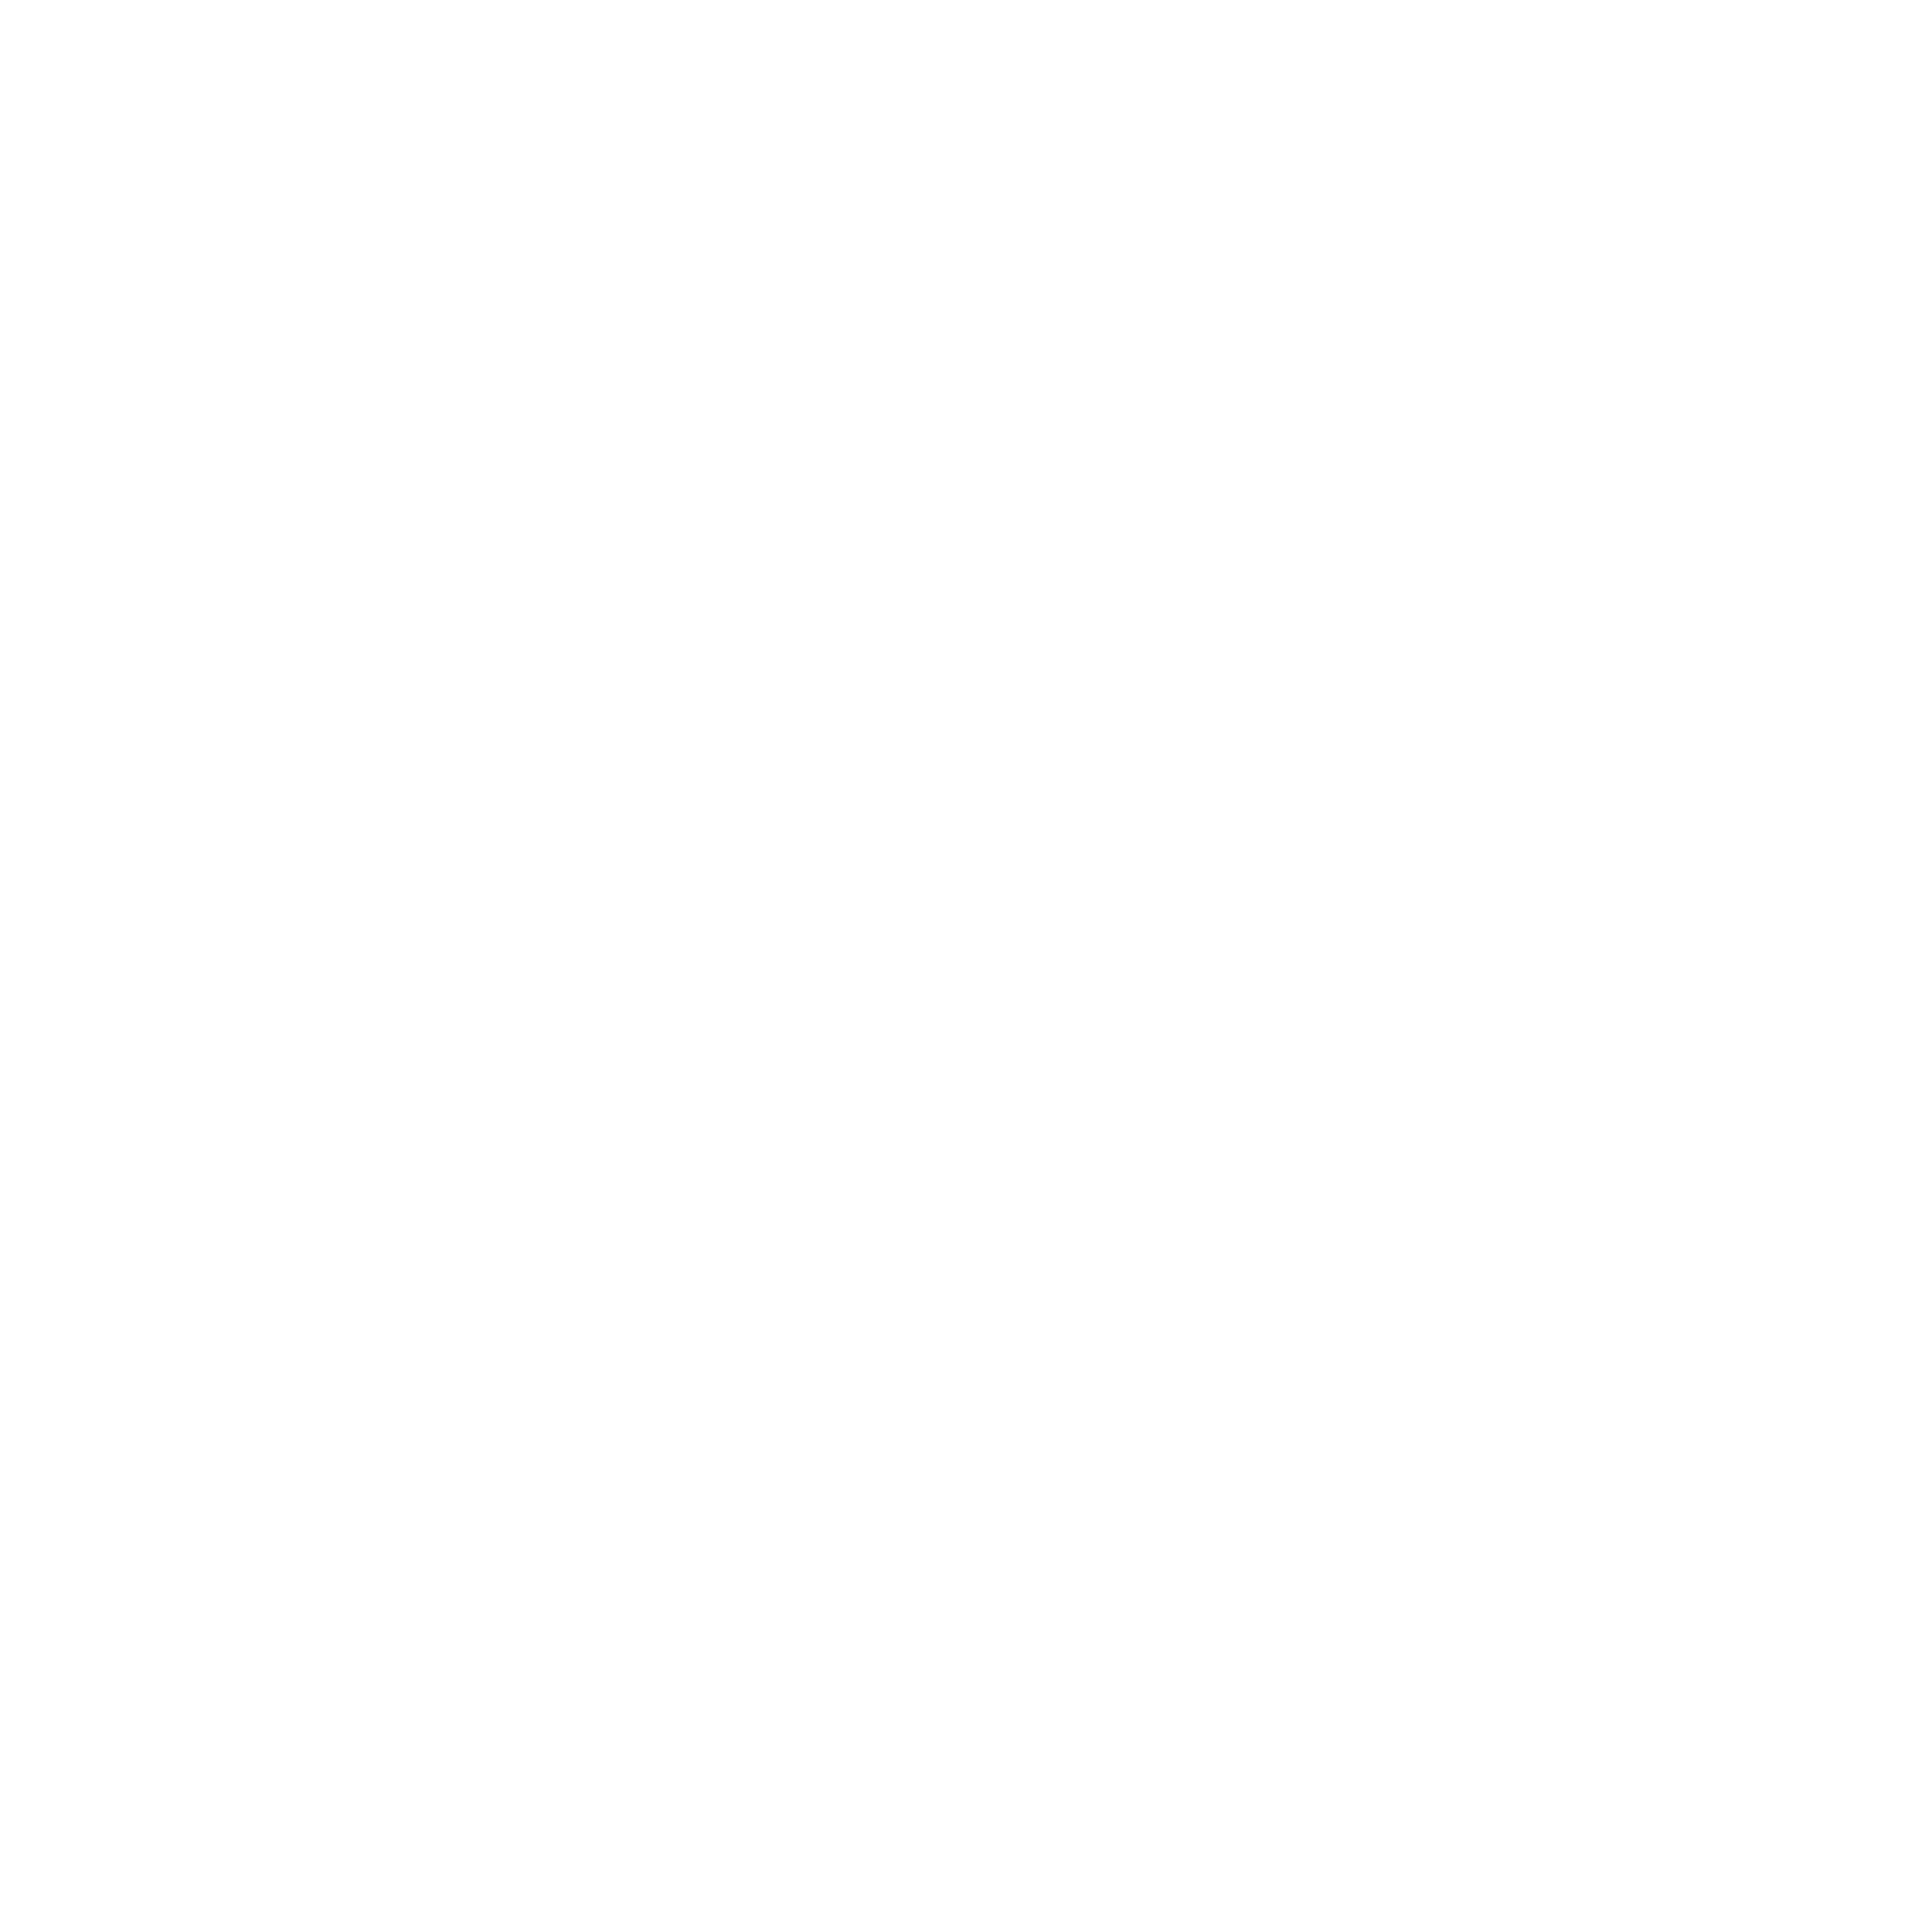 Support Egyesület